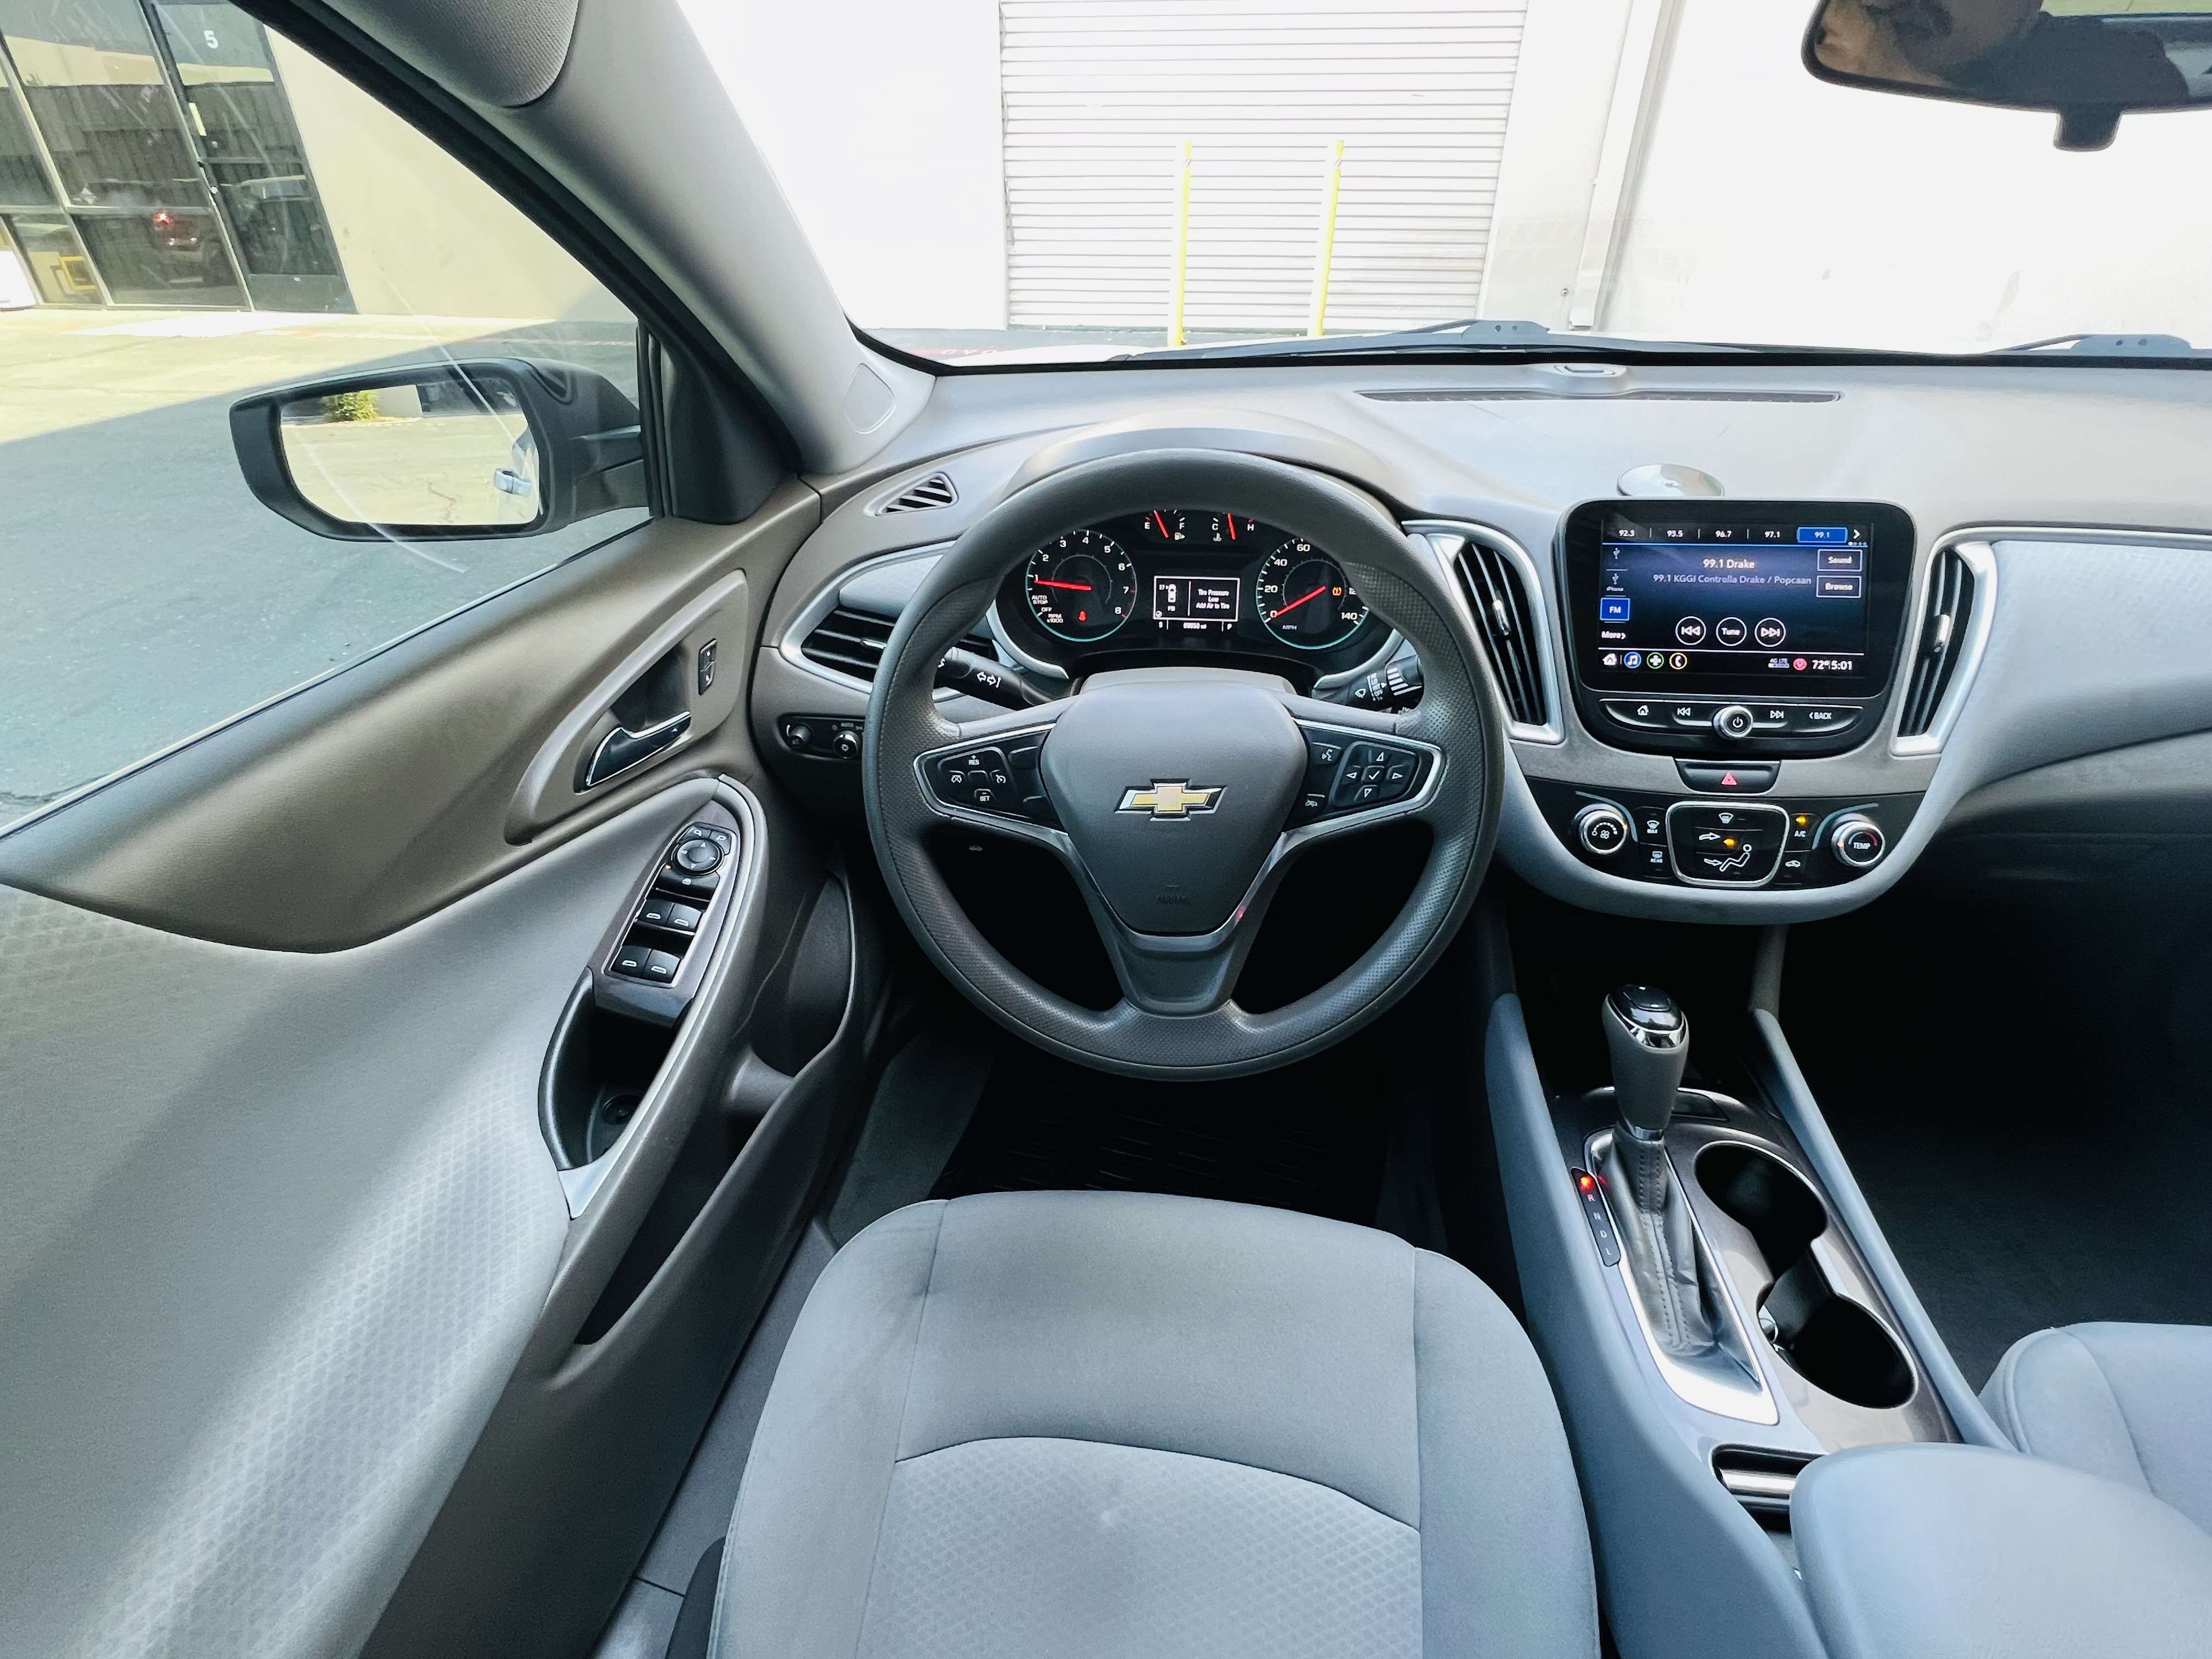 2019 Chevrolet Malibu